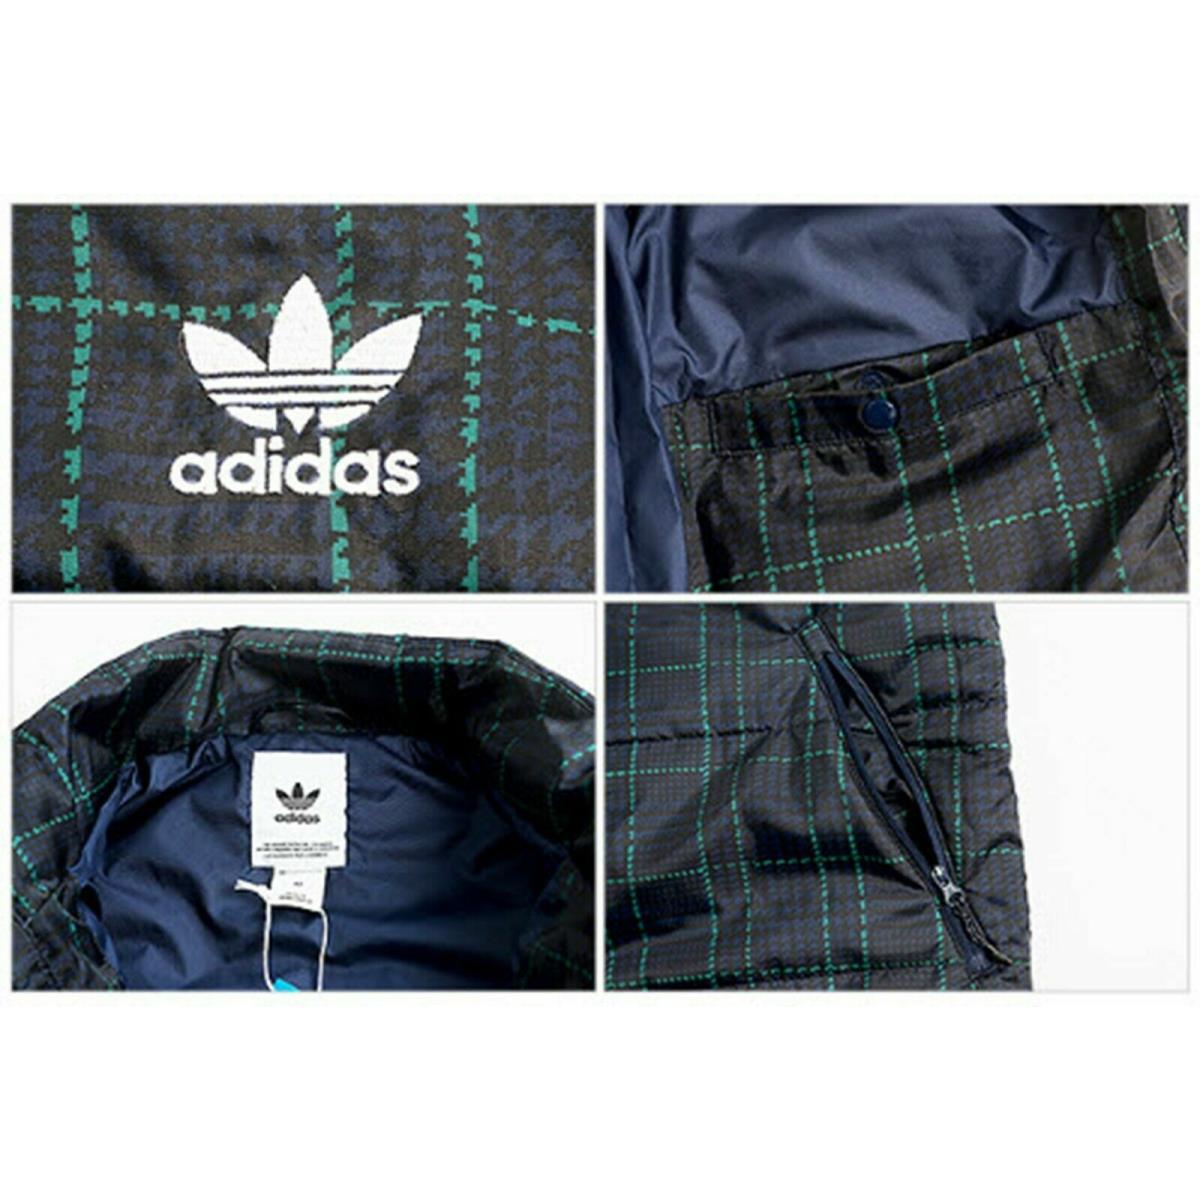 Adidas clothing  - Blue 2